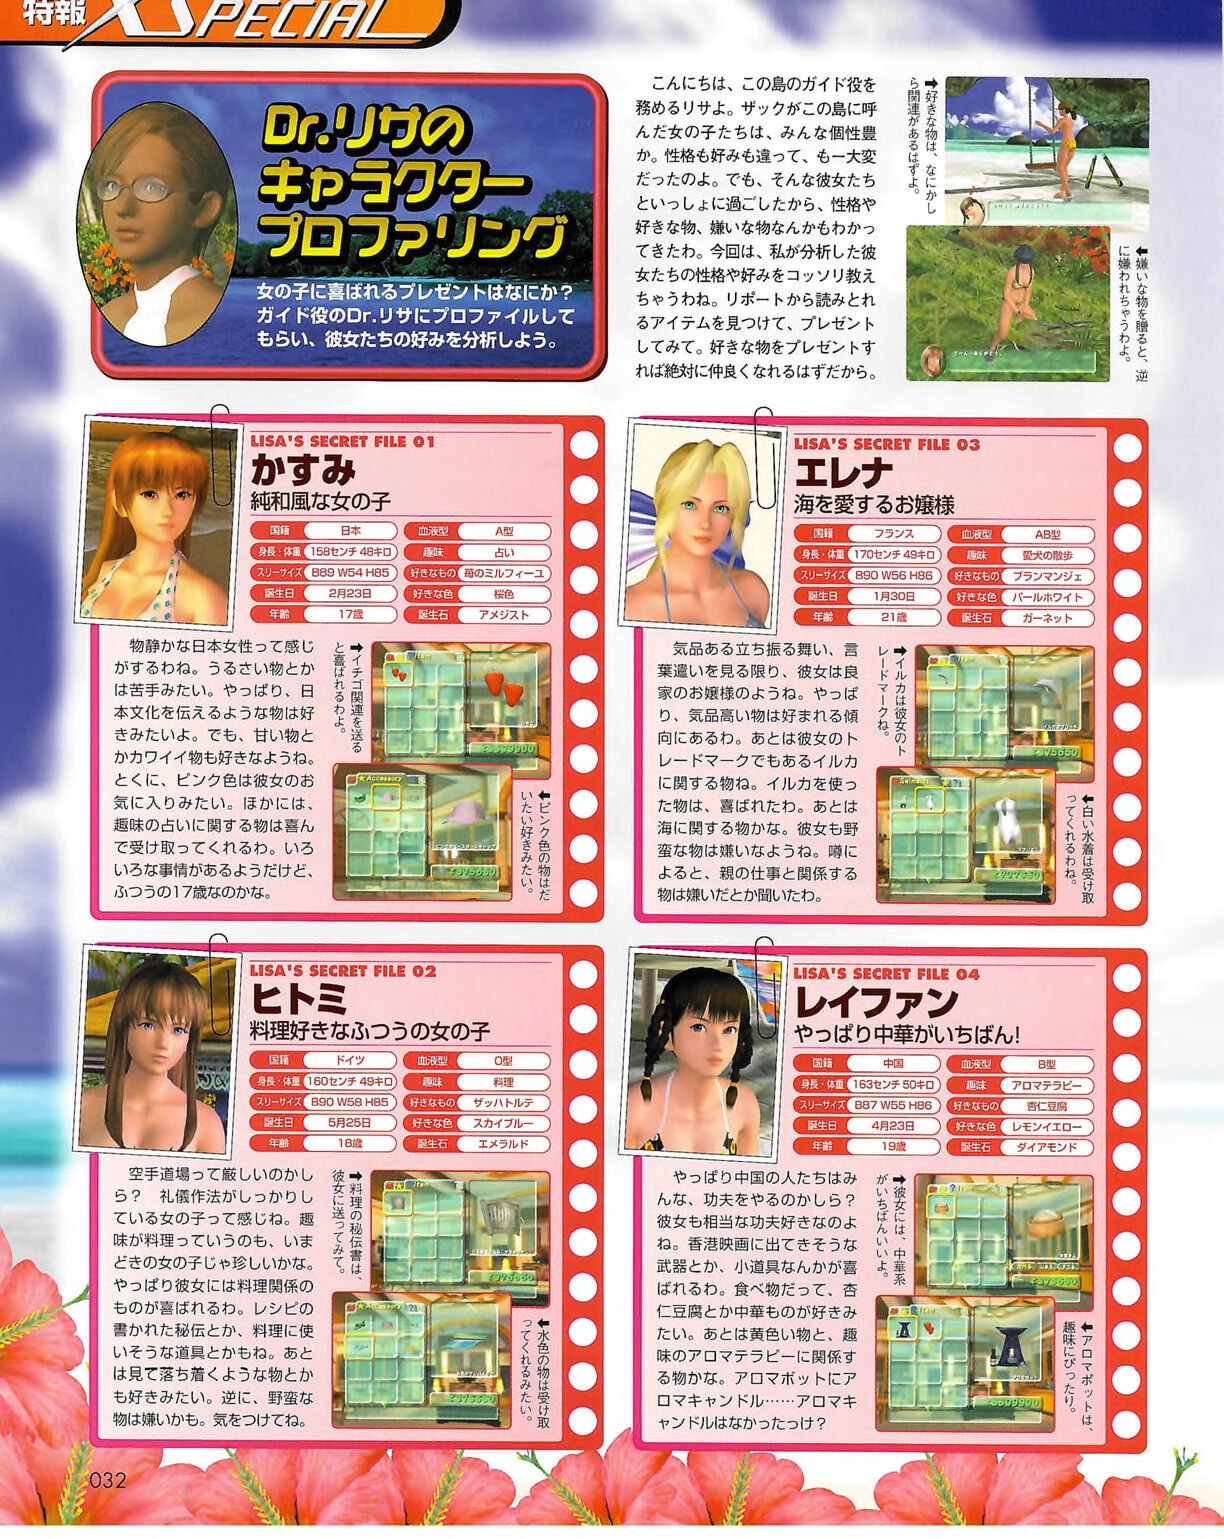 Famitsu_Xbox_2003-04_jp2 31